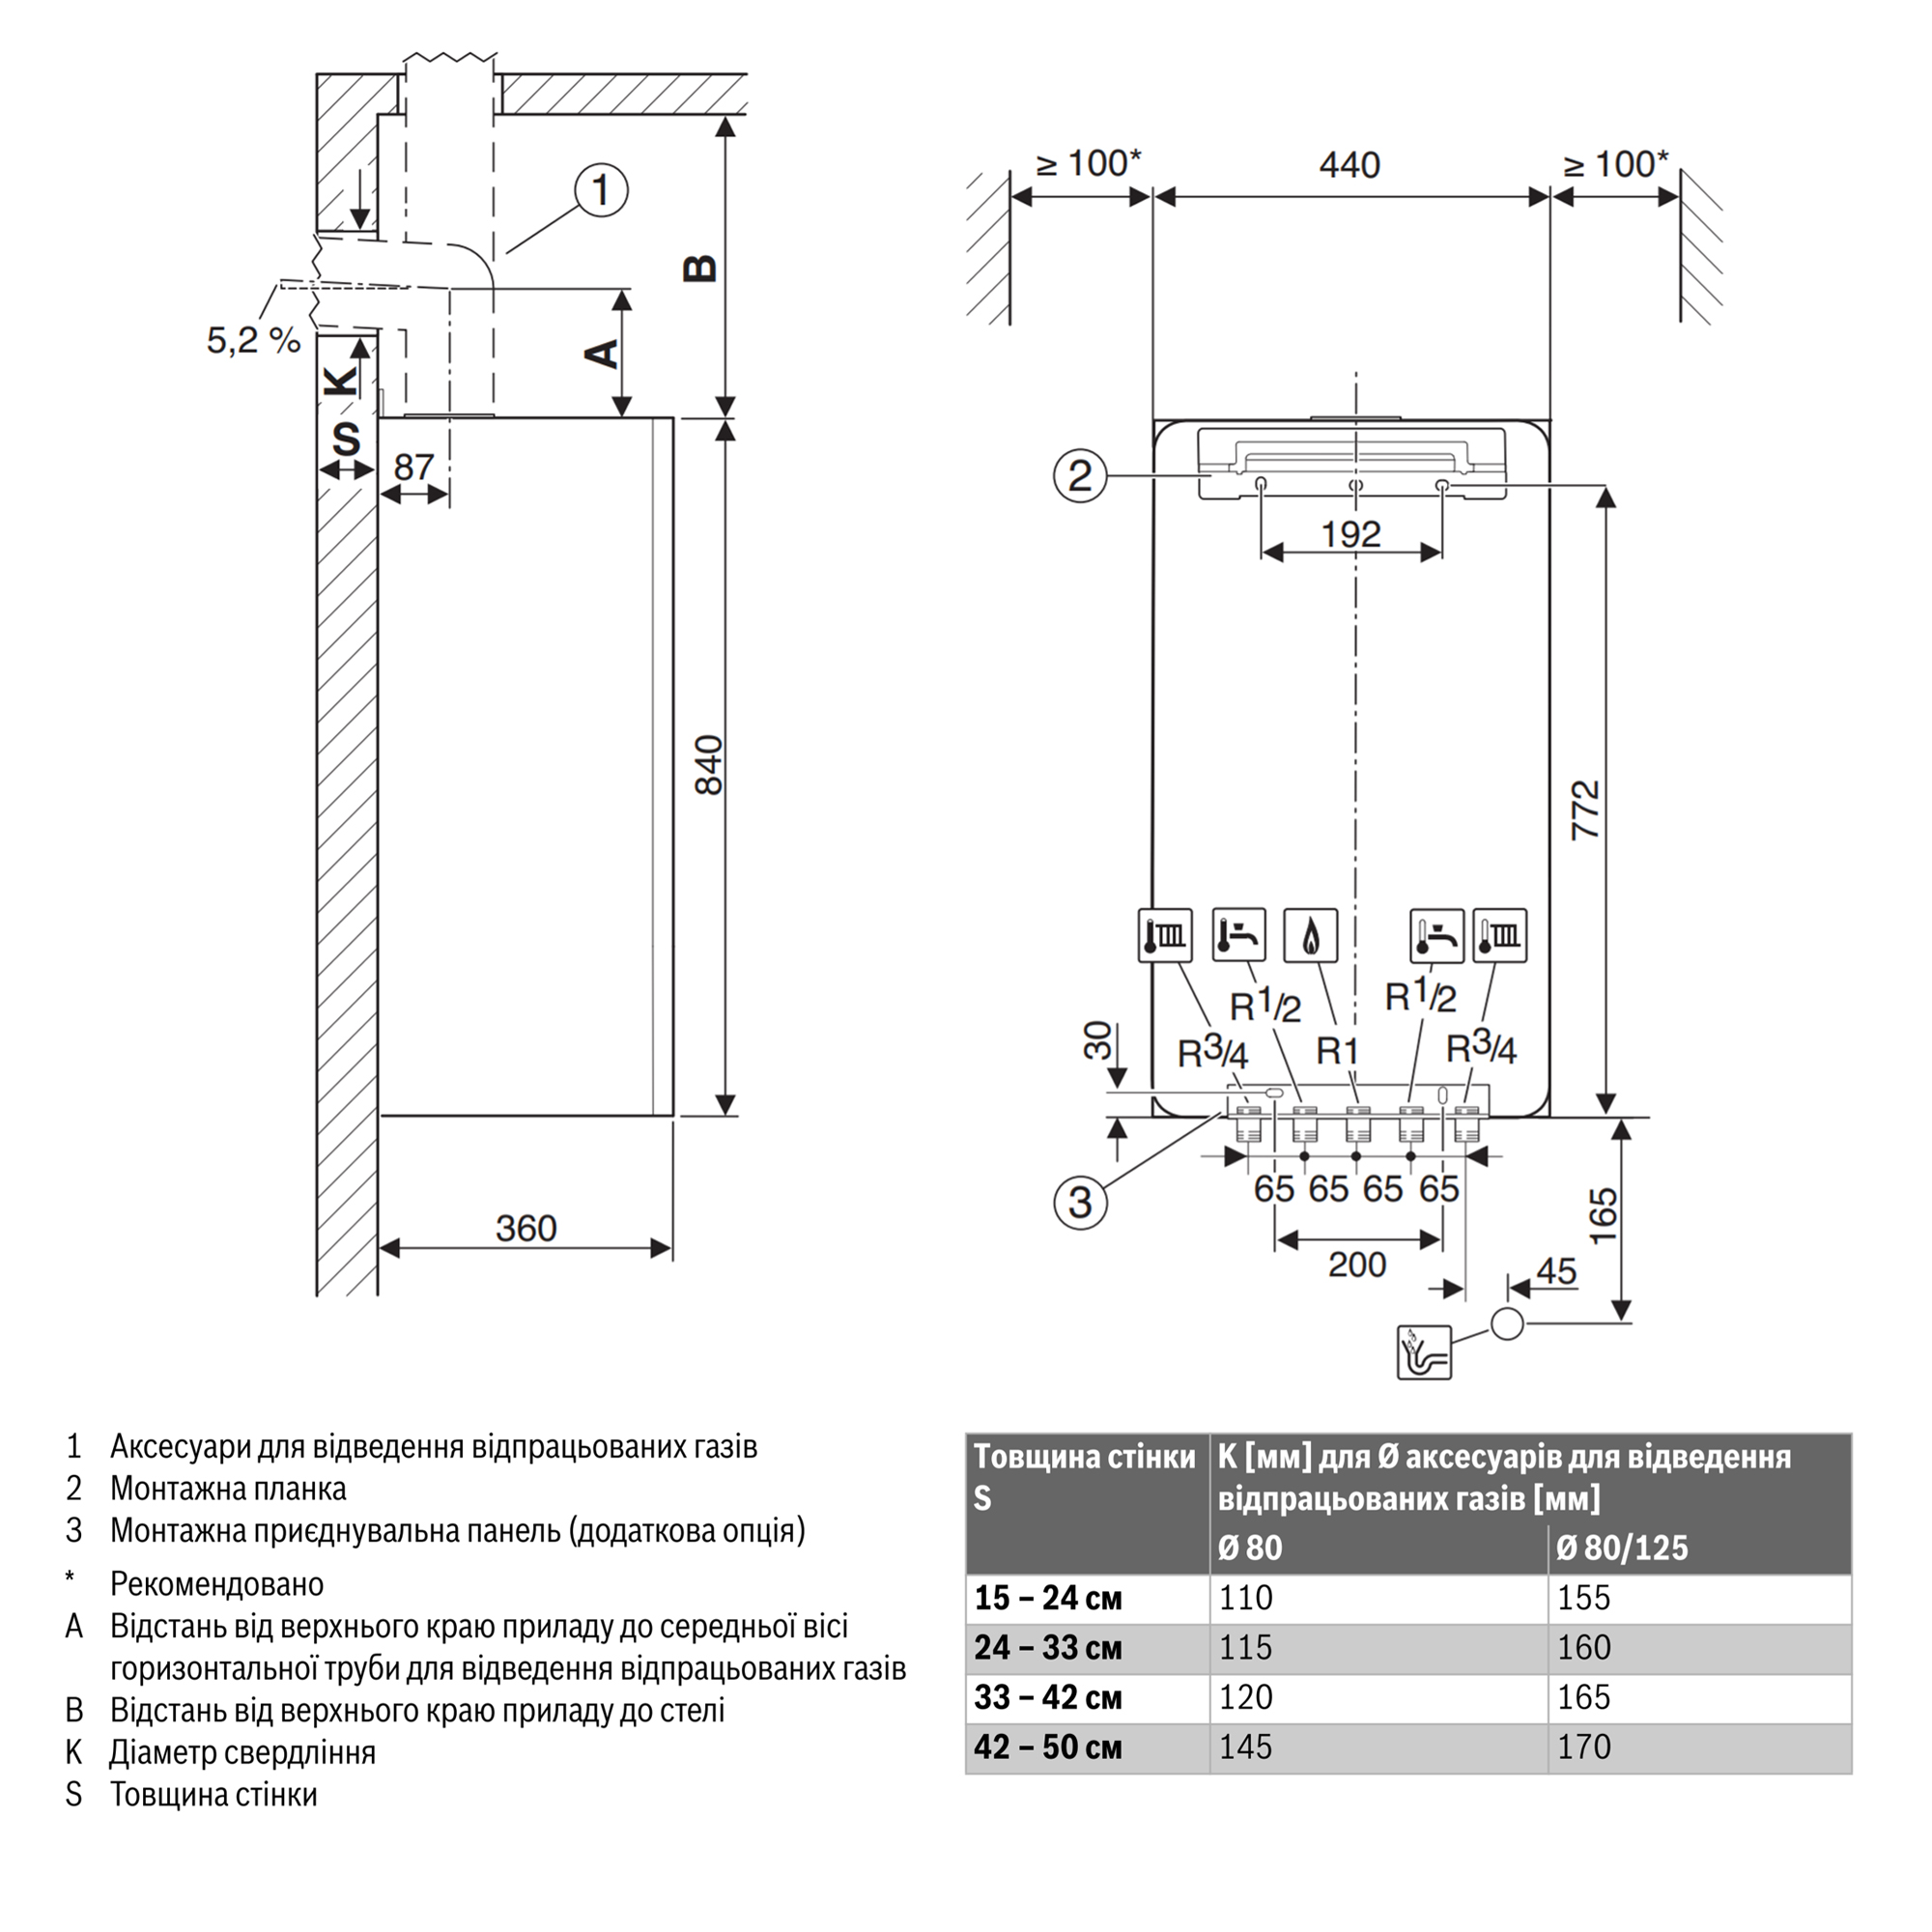 Газовый котел Bosch Condens 7000i W GC7000iW 14/24 CB 23 (7736901385) инструкция - изображение 6